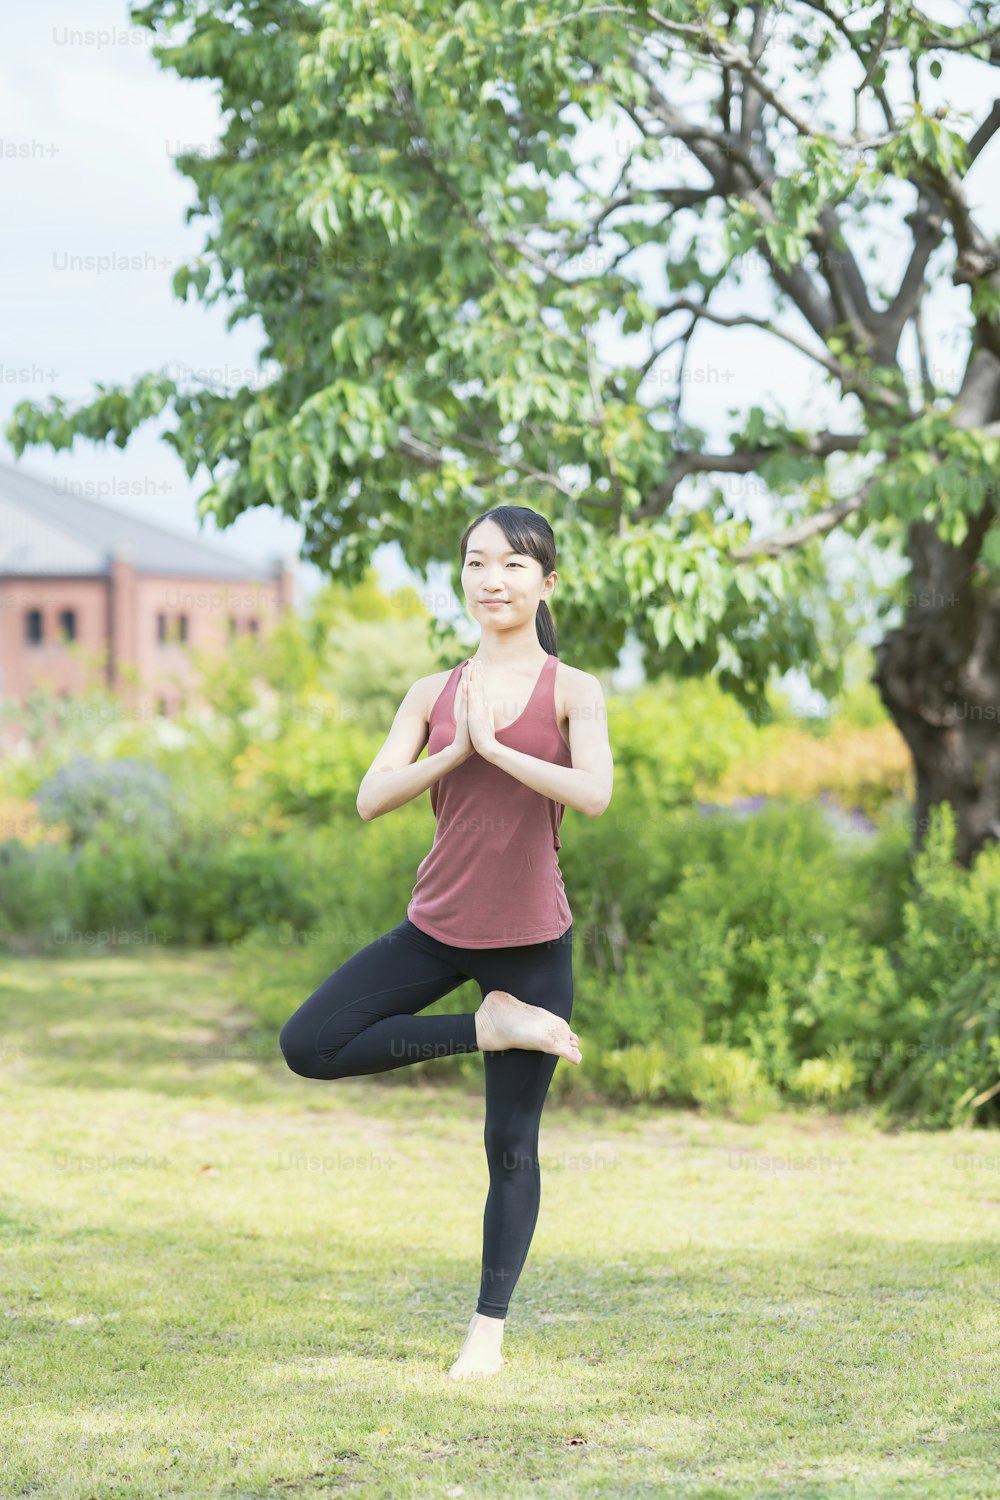 Junge Frau beim Yoga in einem grünen Park an einem schönen Tag